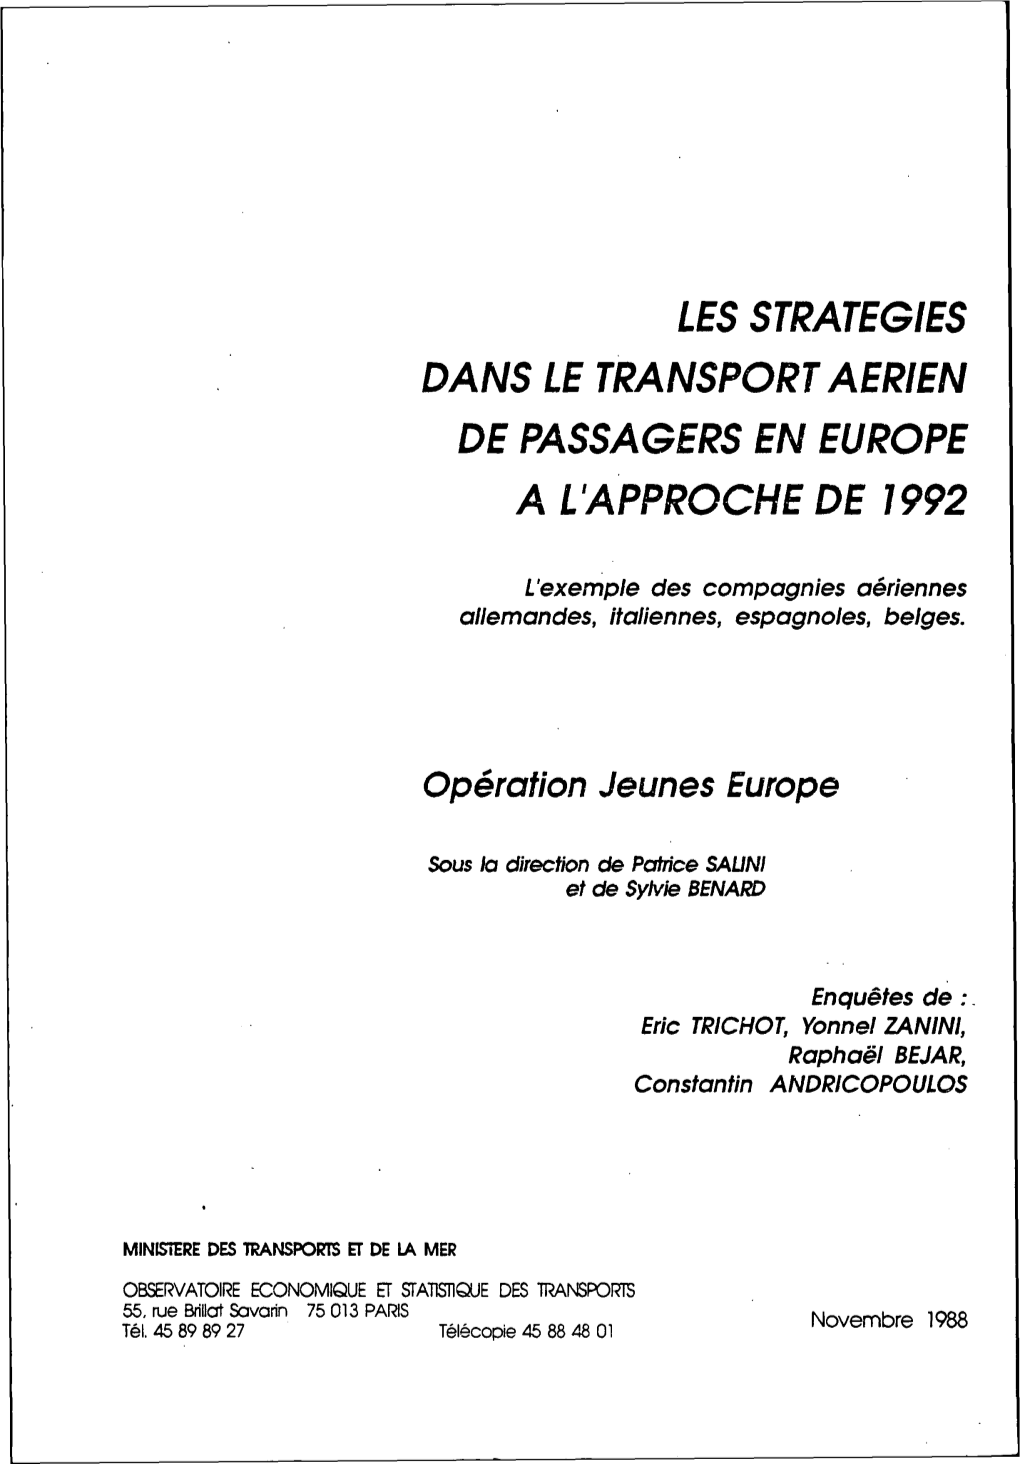 Les Strategies Dans Le Transport Aerien De Passagers En Europe Al Approche De 1992